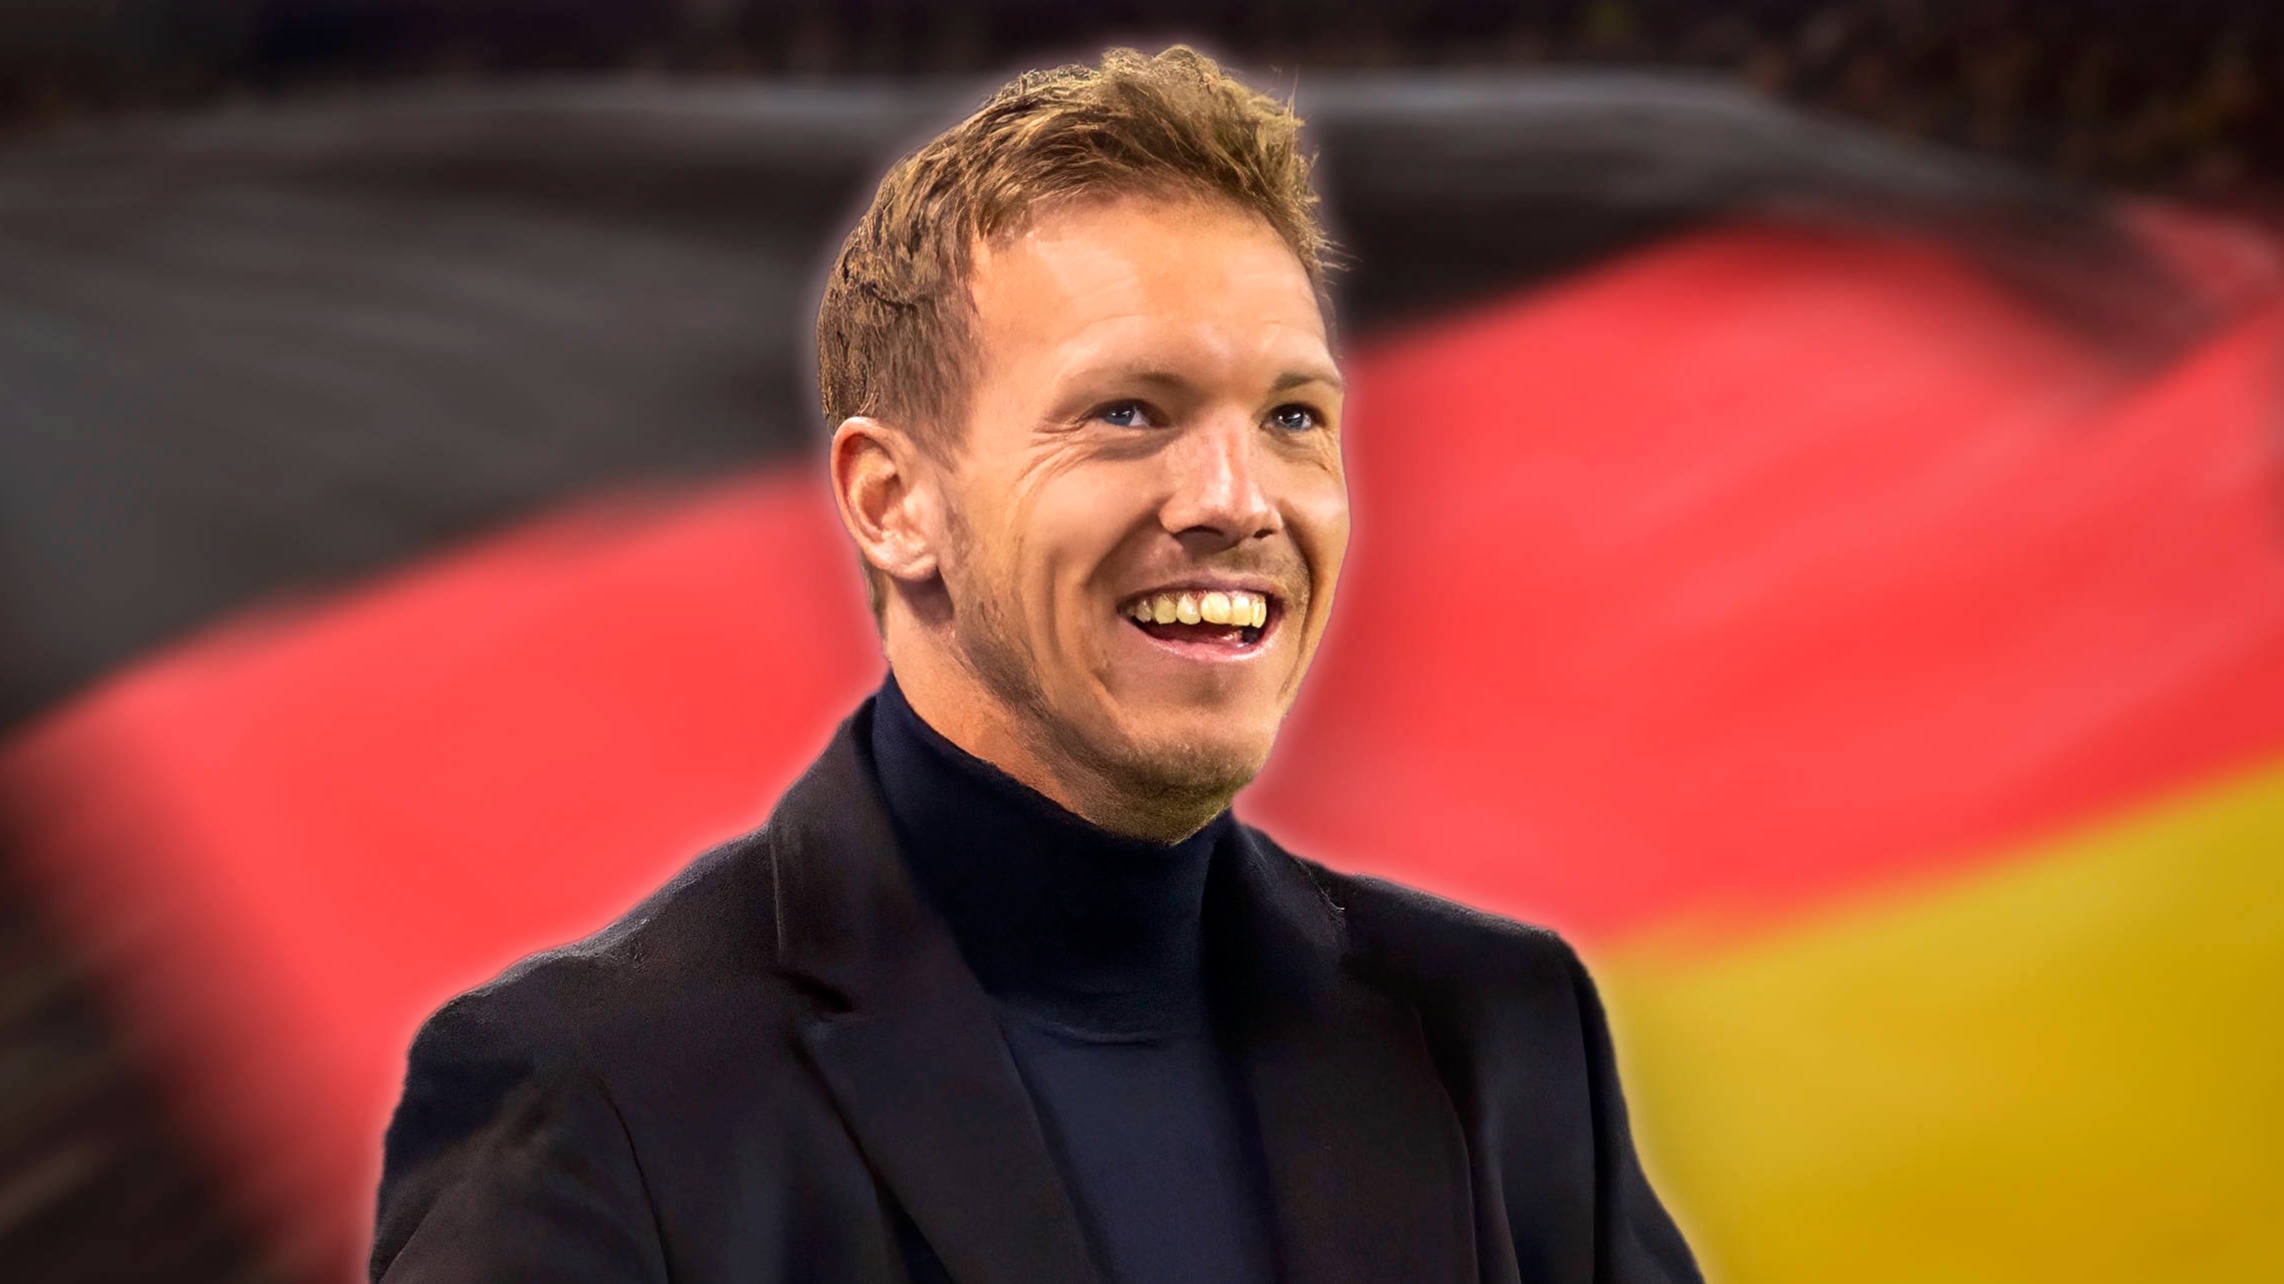 Юлиан Нагельсманн официально назначен главным тренером сборной Германии по футболу